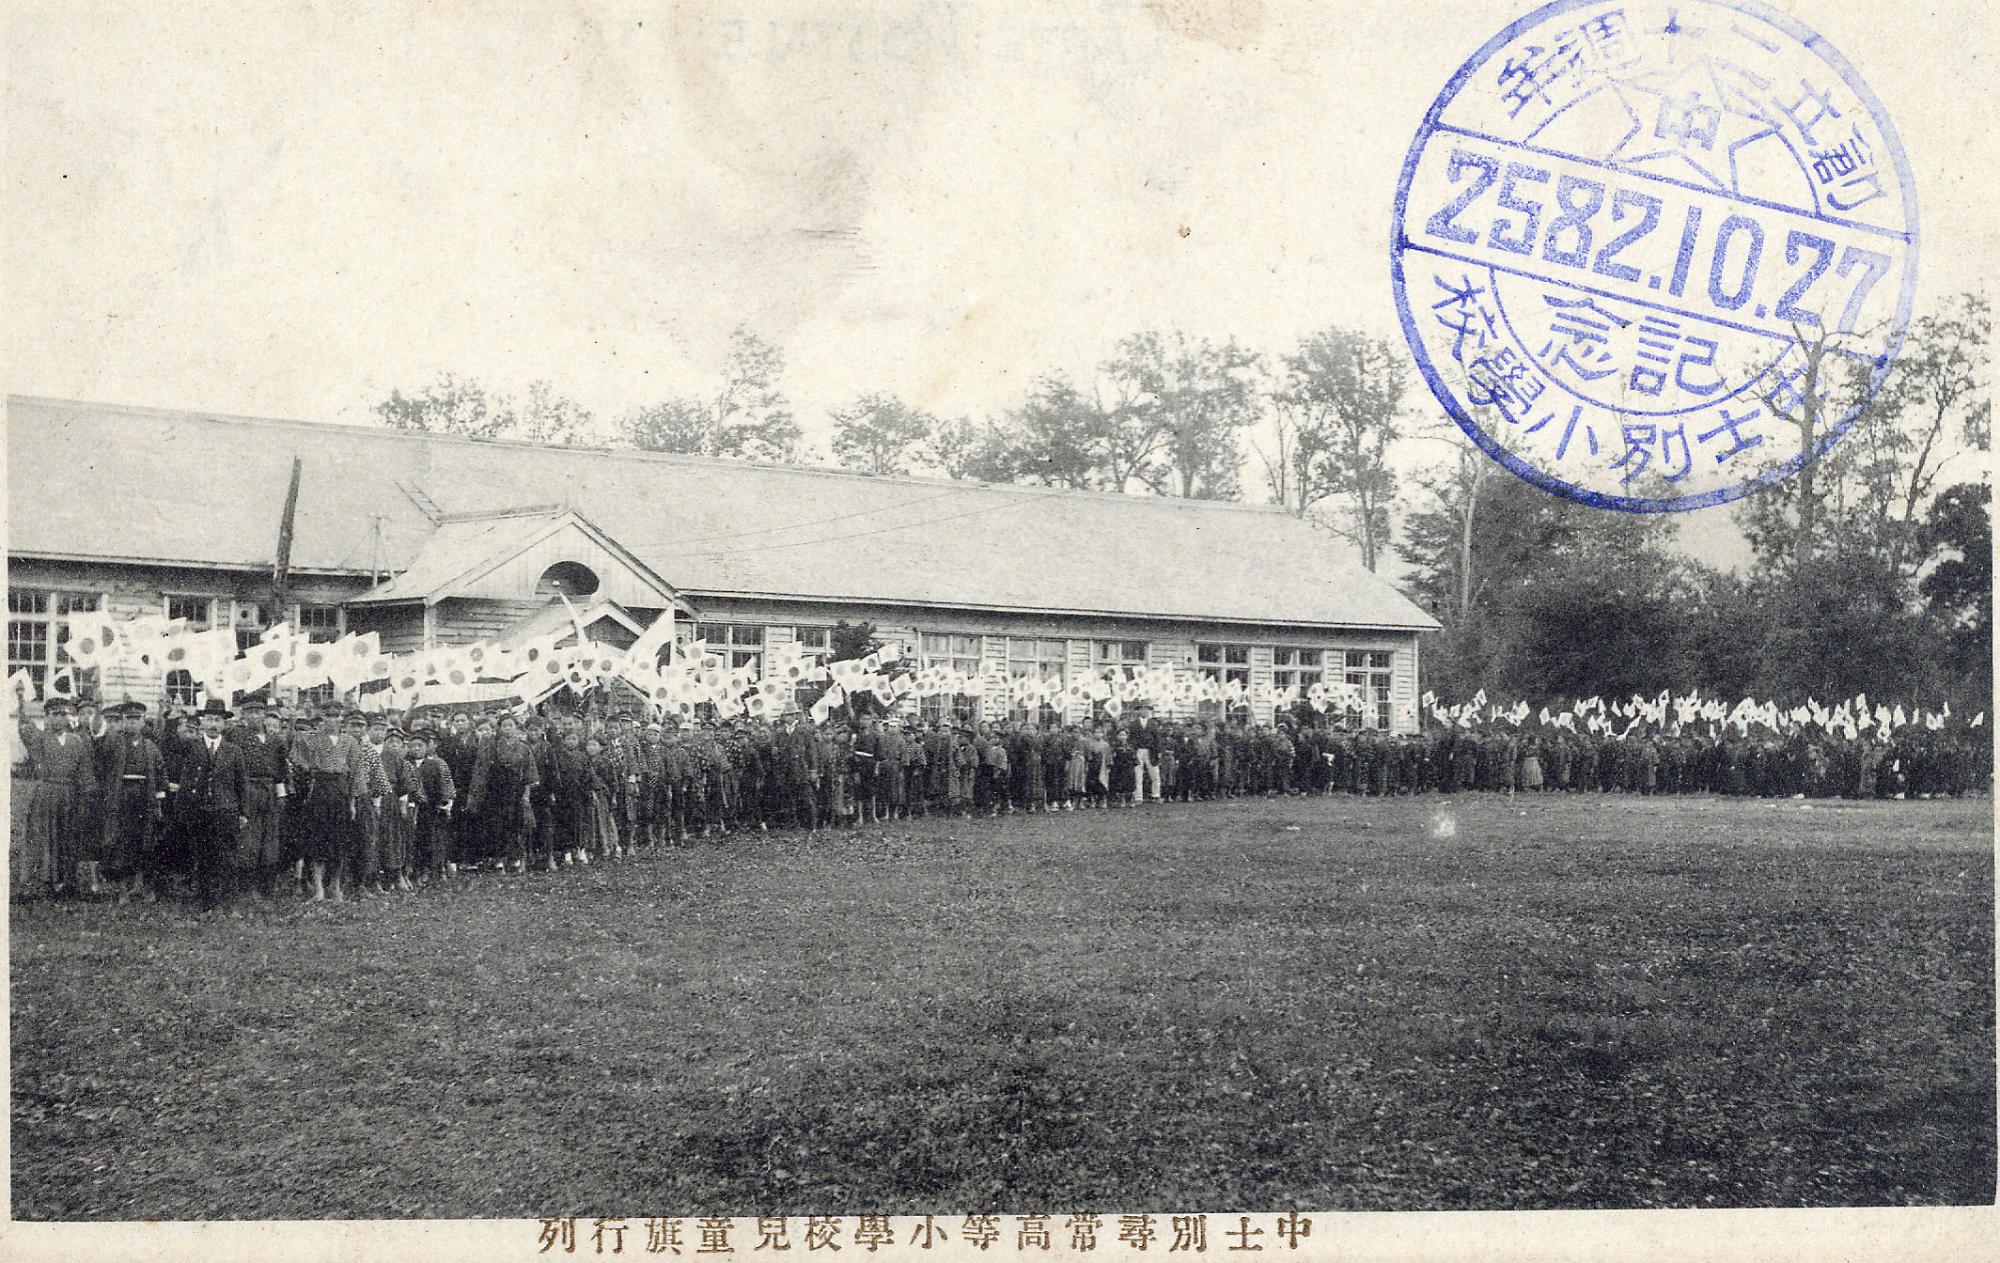 校舎の前に大勢の人達が集まり日の丸の旗を振っている大正時代の中士別小学校校舎の白黒写真